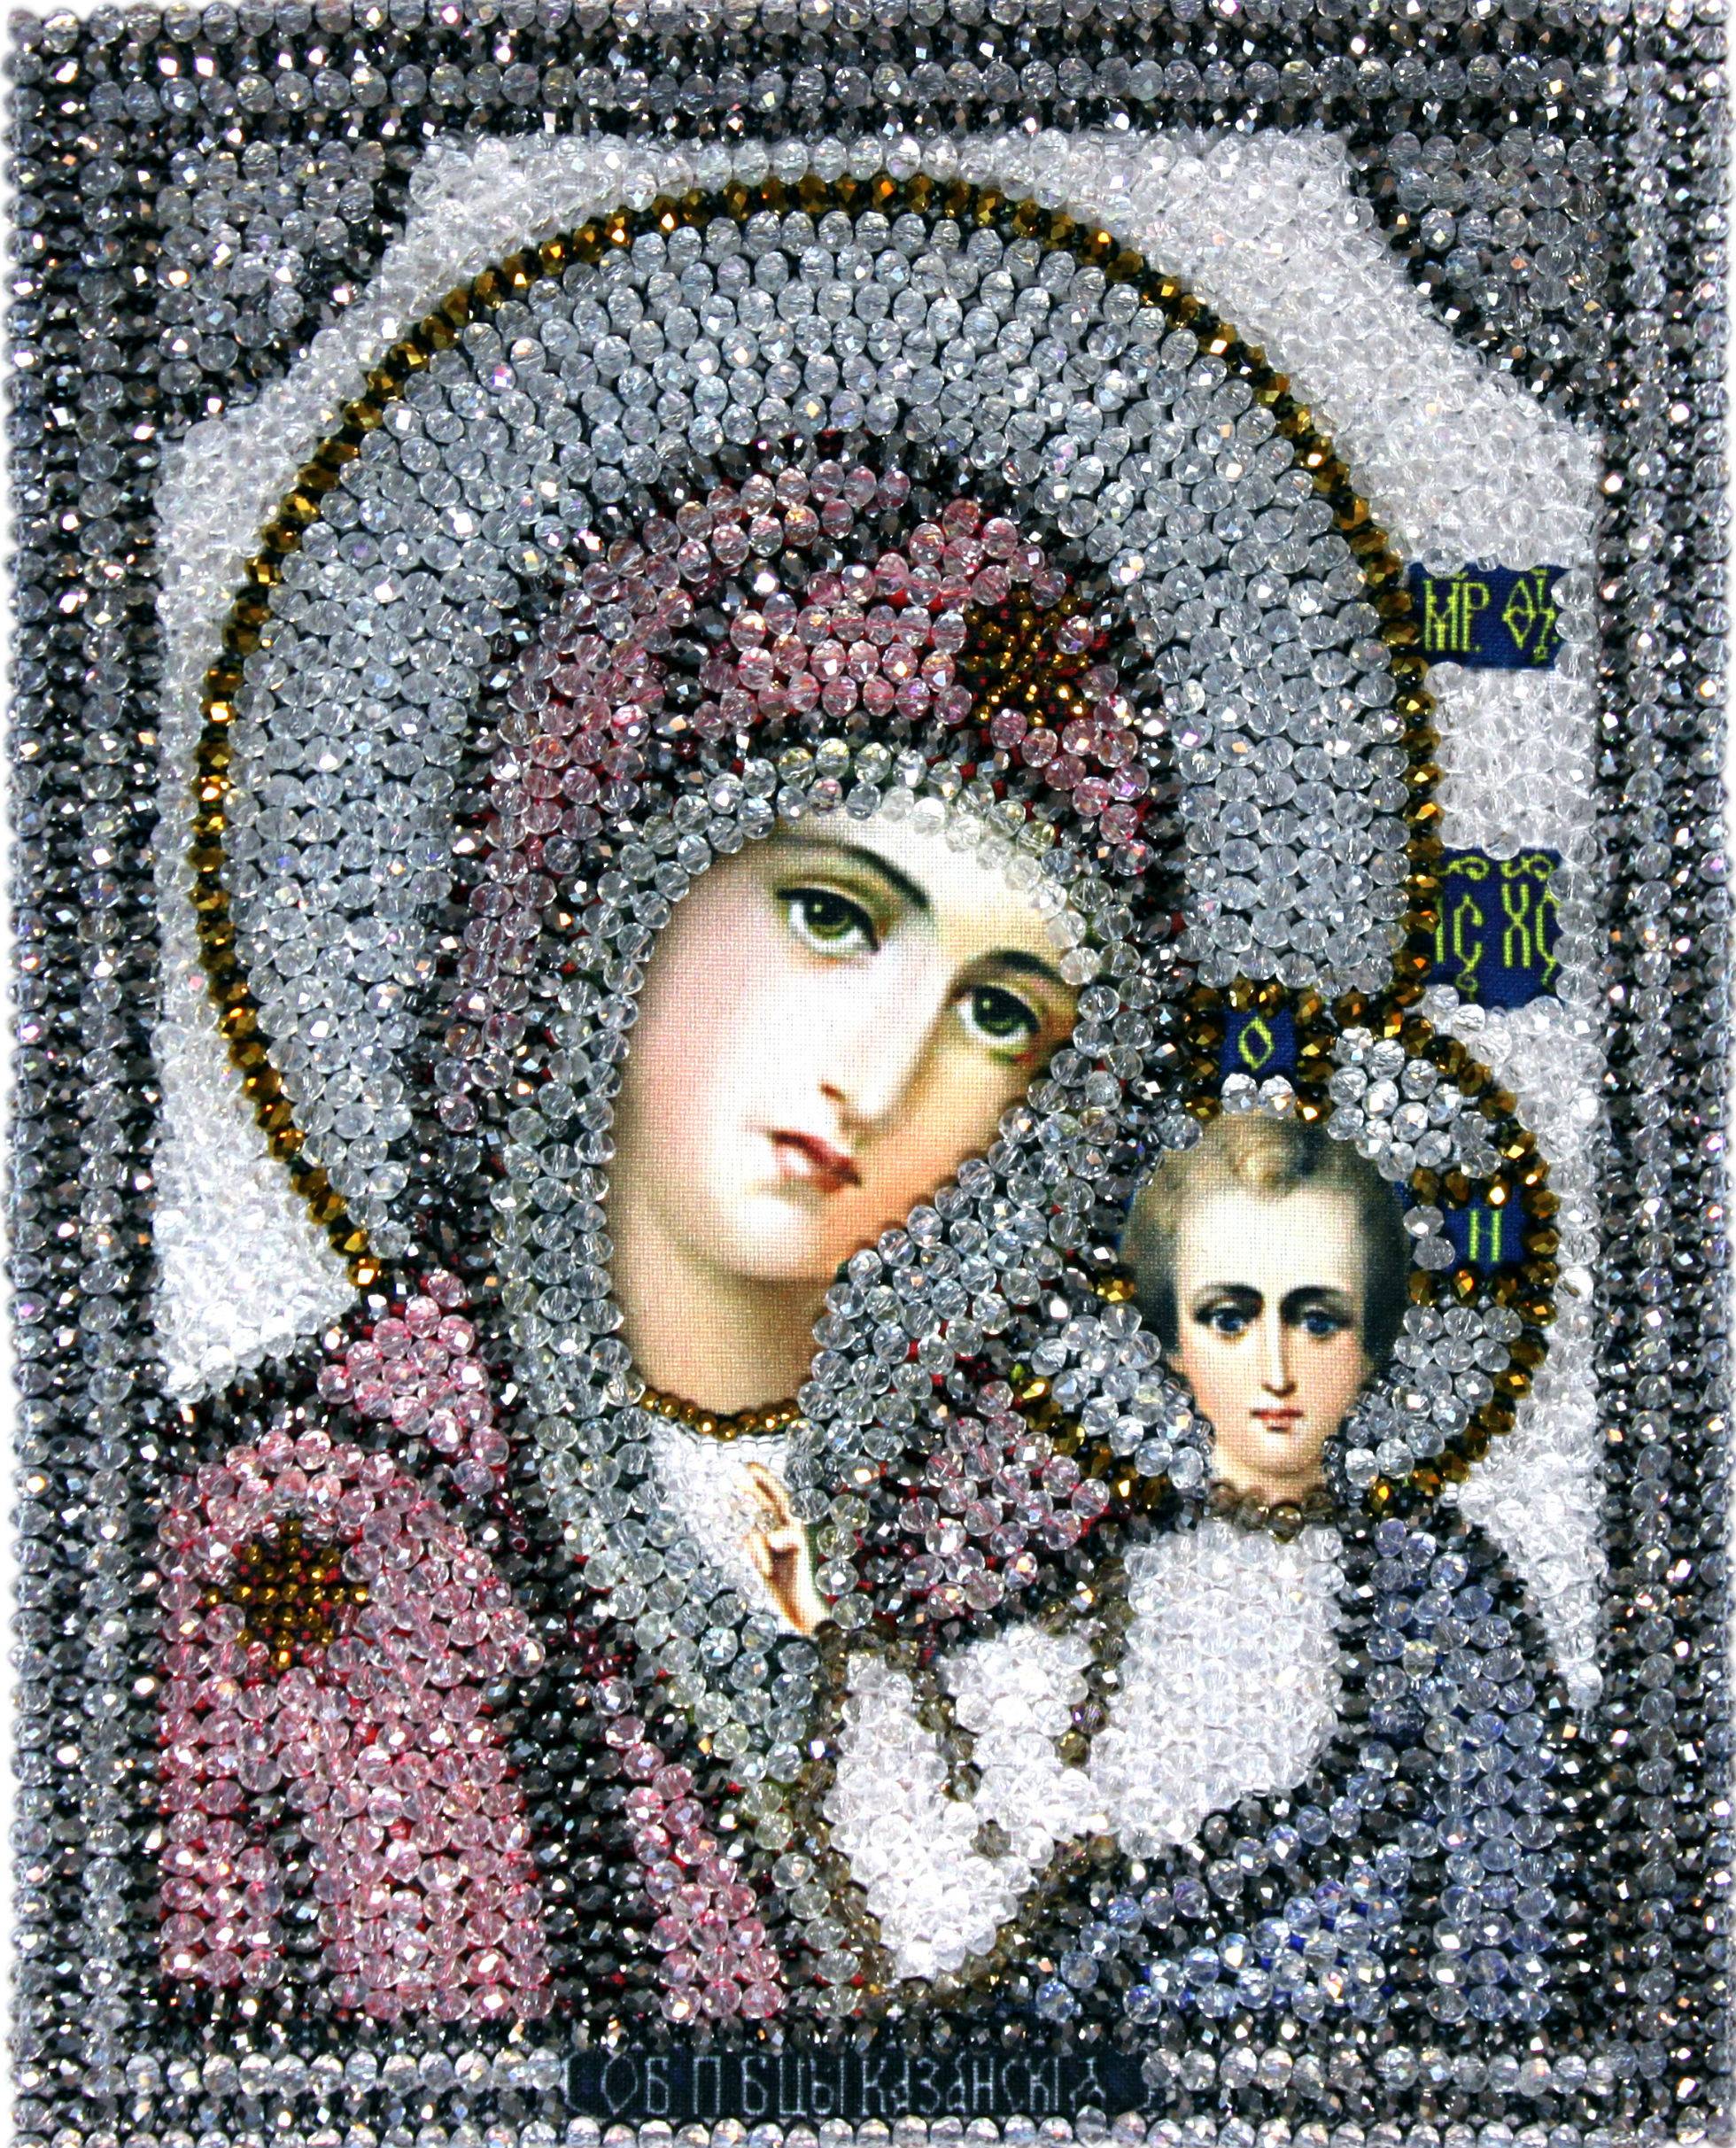 Вышивка икон. вышитые бисером образа господа вседержителя, божией матери и святых покровителей